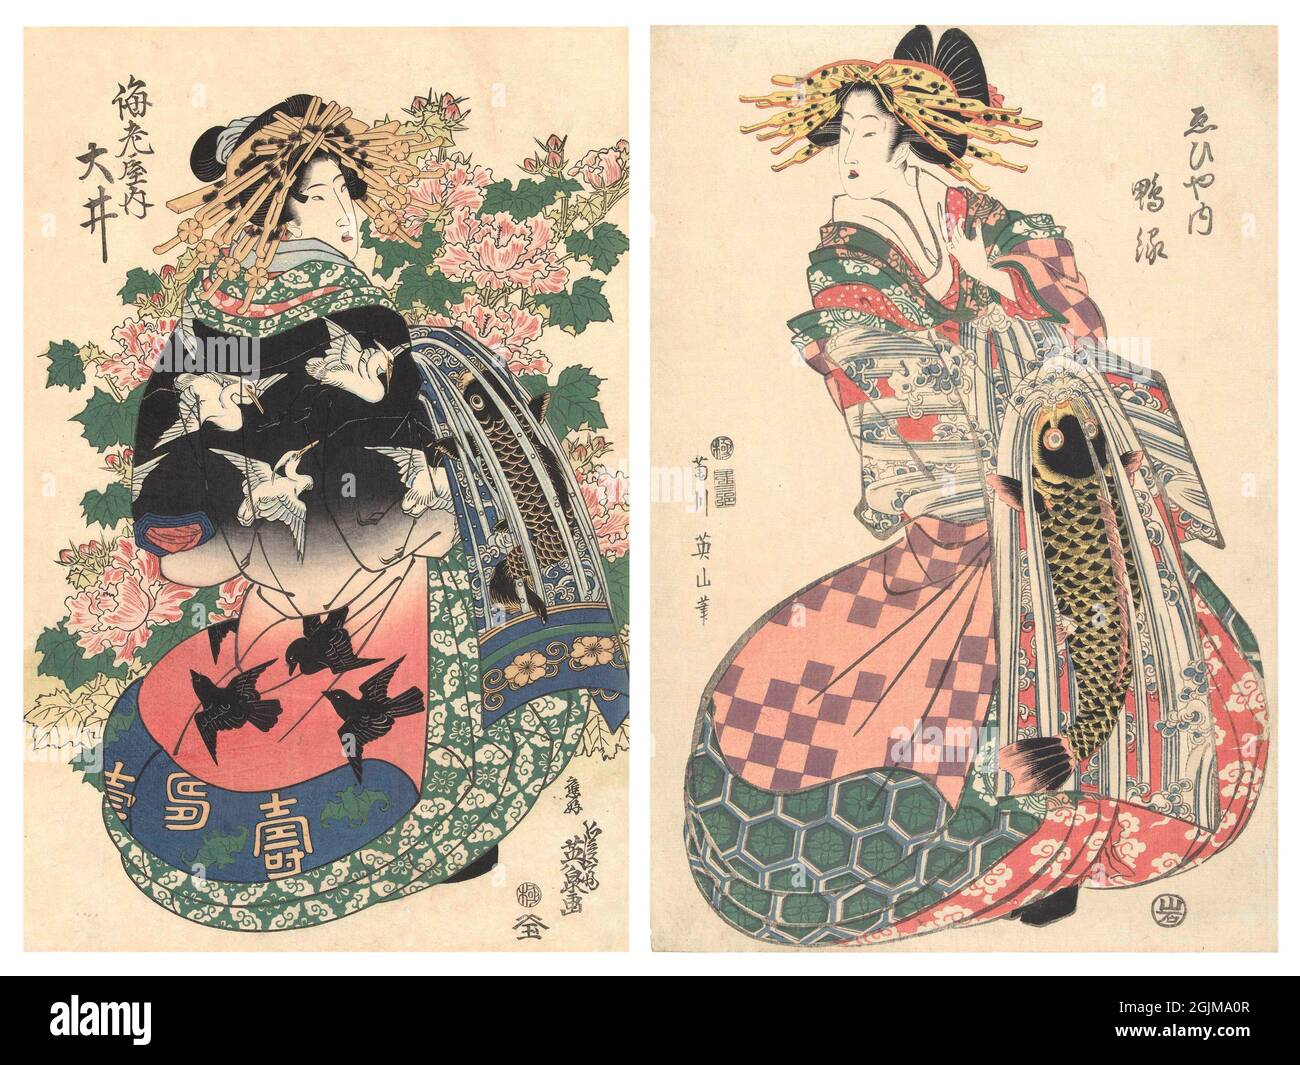 Conception optimisée et améliorée unique de deux illustrations japonais de coupe de bois du XIXe siècle. À gauche : courtesan dans un kimono avec des motifs de grue et de corbeau, et un motif de carpe sur obi, debout avec des pivoines exubérant. A droite : courtesan de la maison d'Ebiya courtesan vêtu de kimono rose et vert, motif d'eau obi et grande carpe devant. Banque D'Images